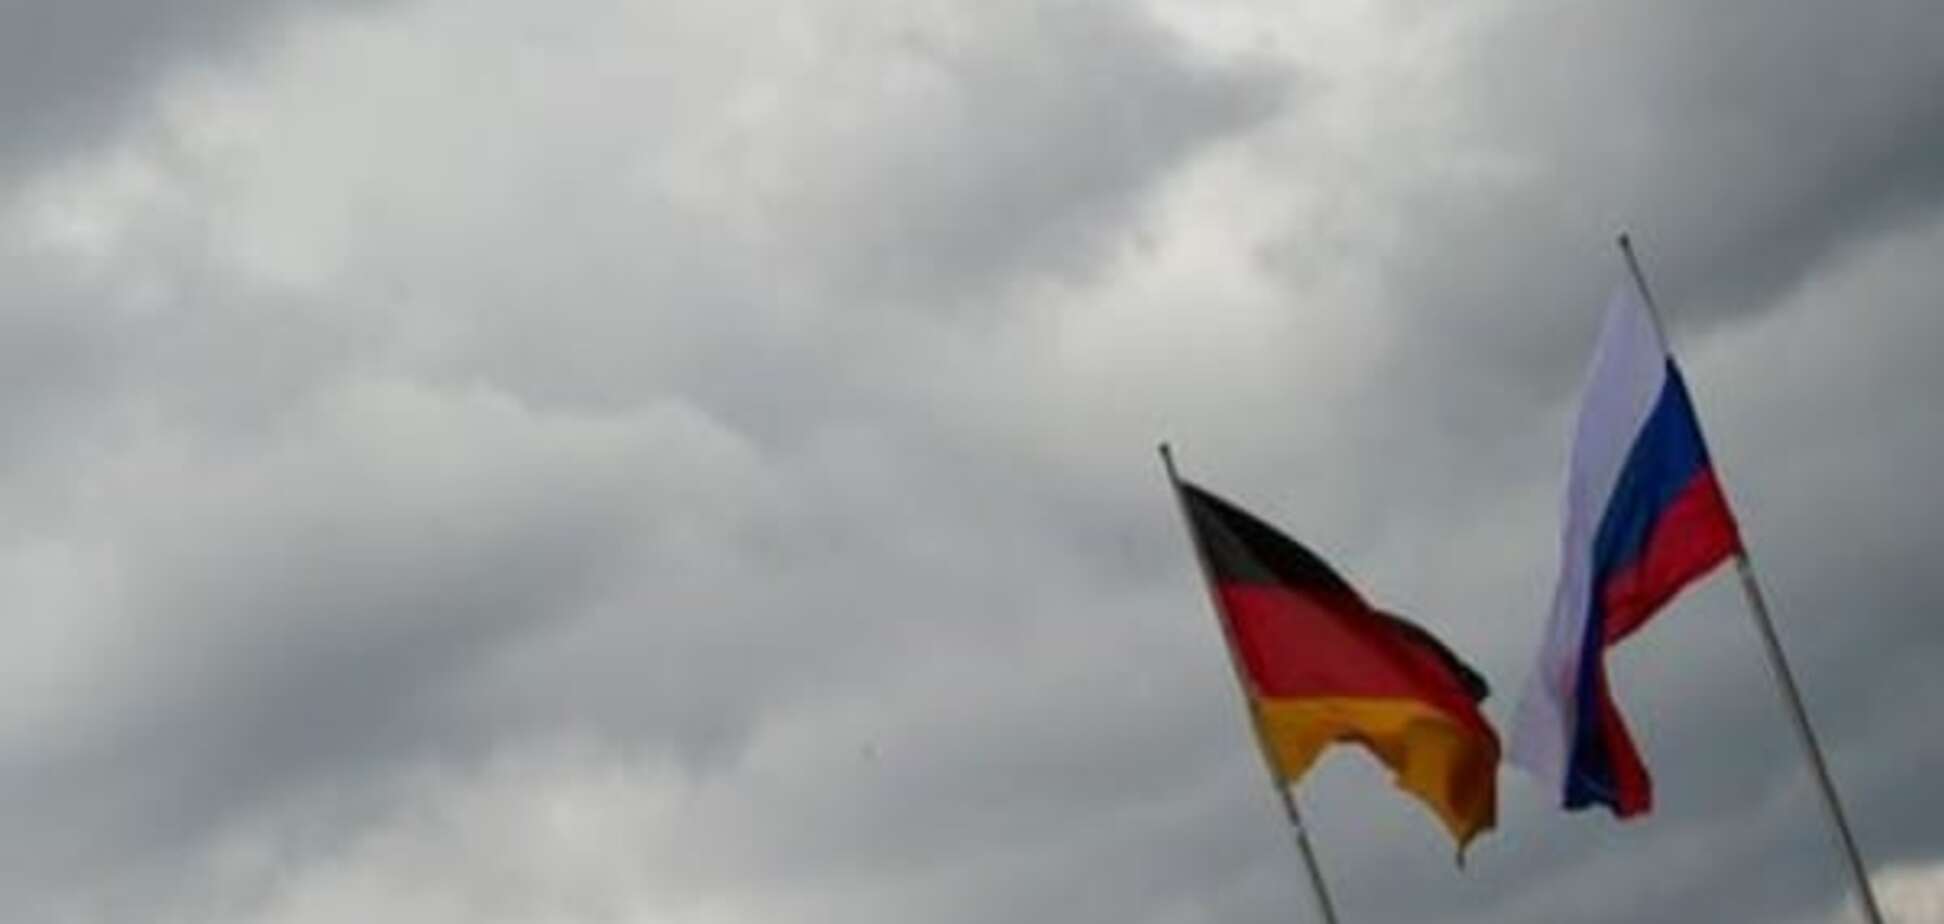 Флаги Германии и РФ